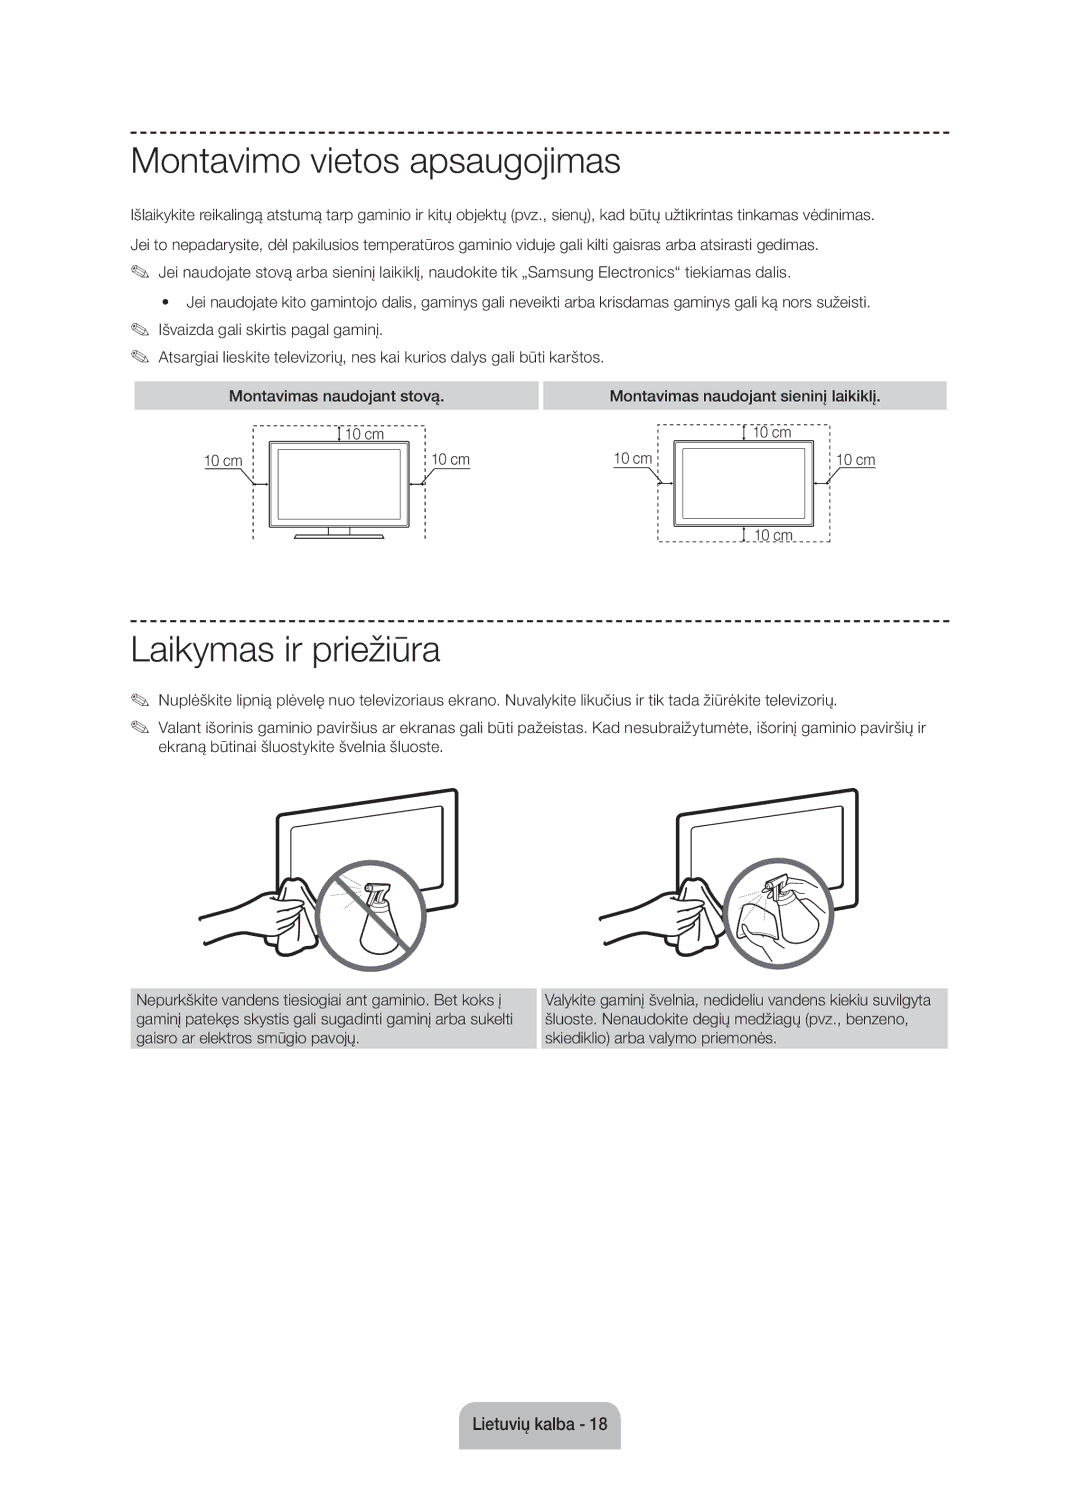 Samsung UE60J6100AWXBT Montavimo vietos apsaugojimas, Laikymas ir priežiūra, Montavimas naudojant sieninį laikiklį 10 cm 